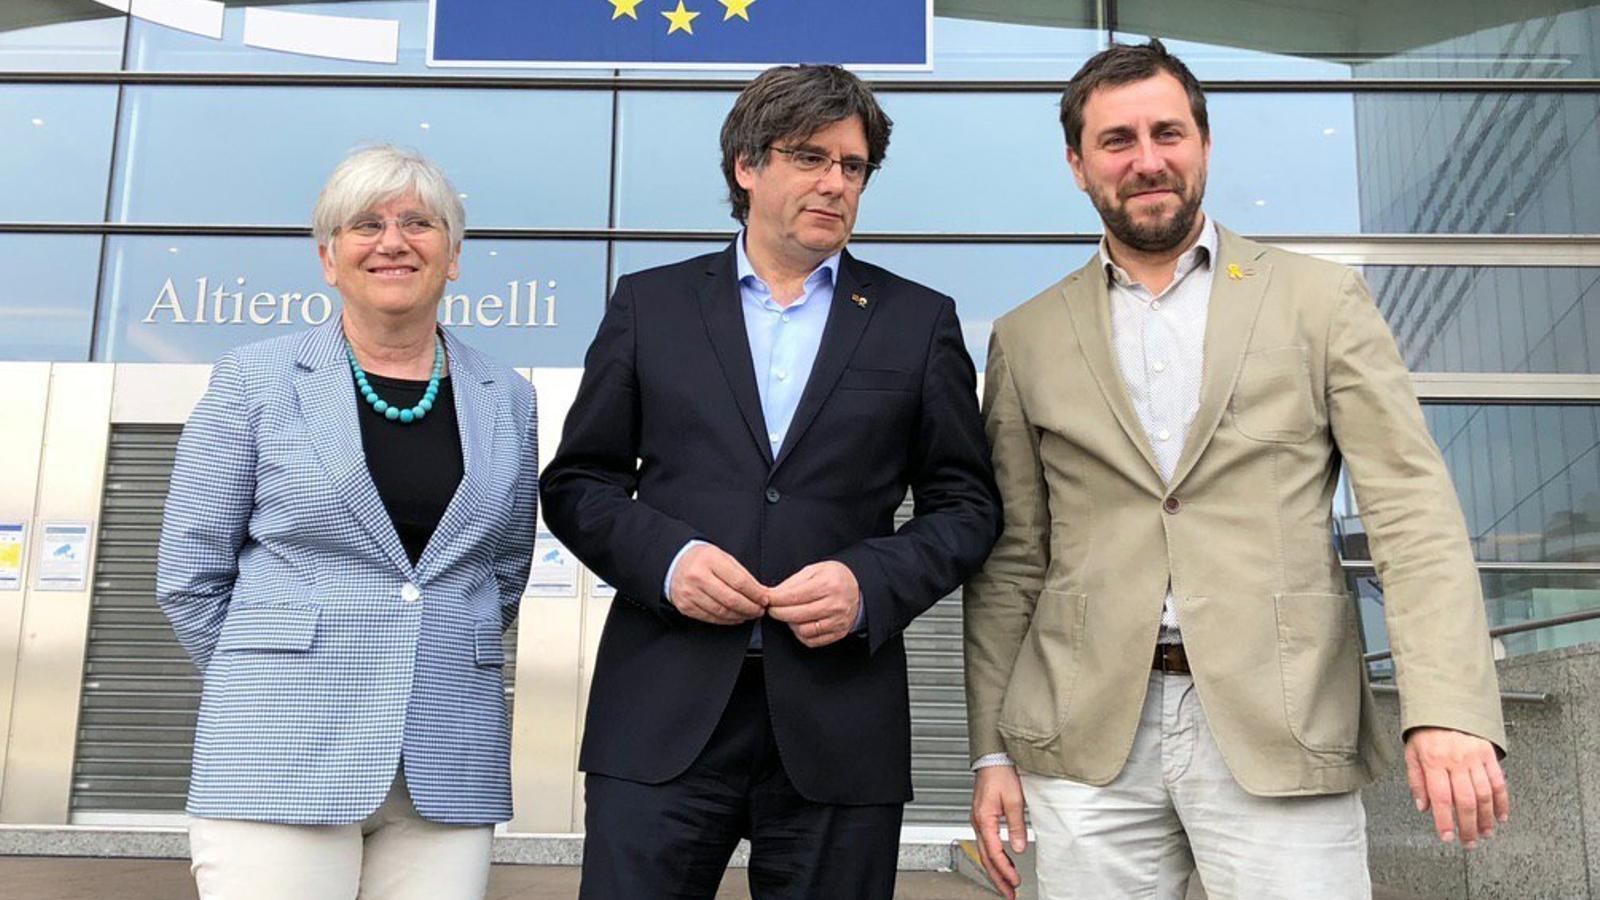 L'expresident català a l'exili, Carles Puigdemont, amb els exconsellers Clara Ponsatí i Toni Comín davant del Parlament Europeu / J. M.